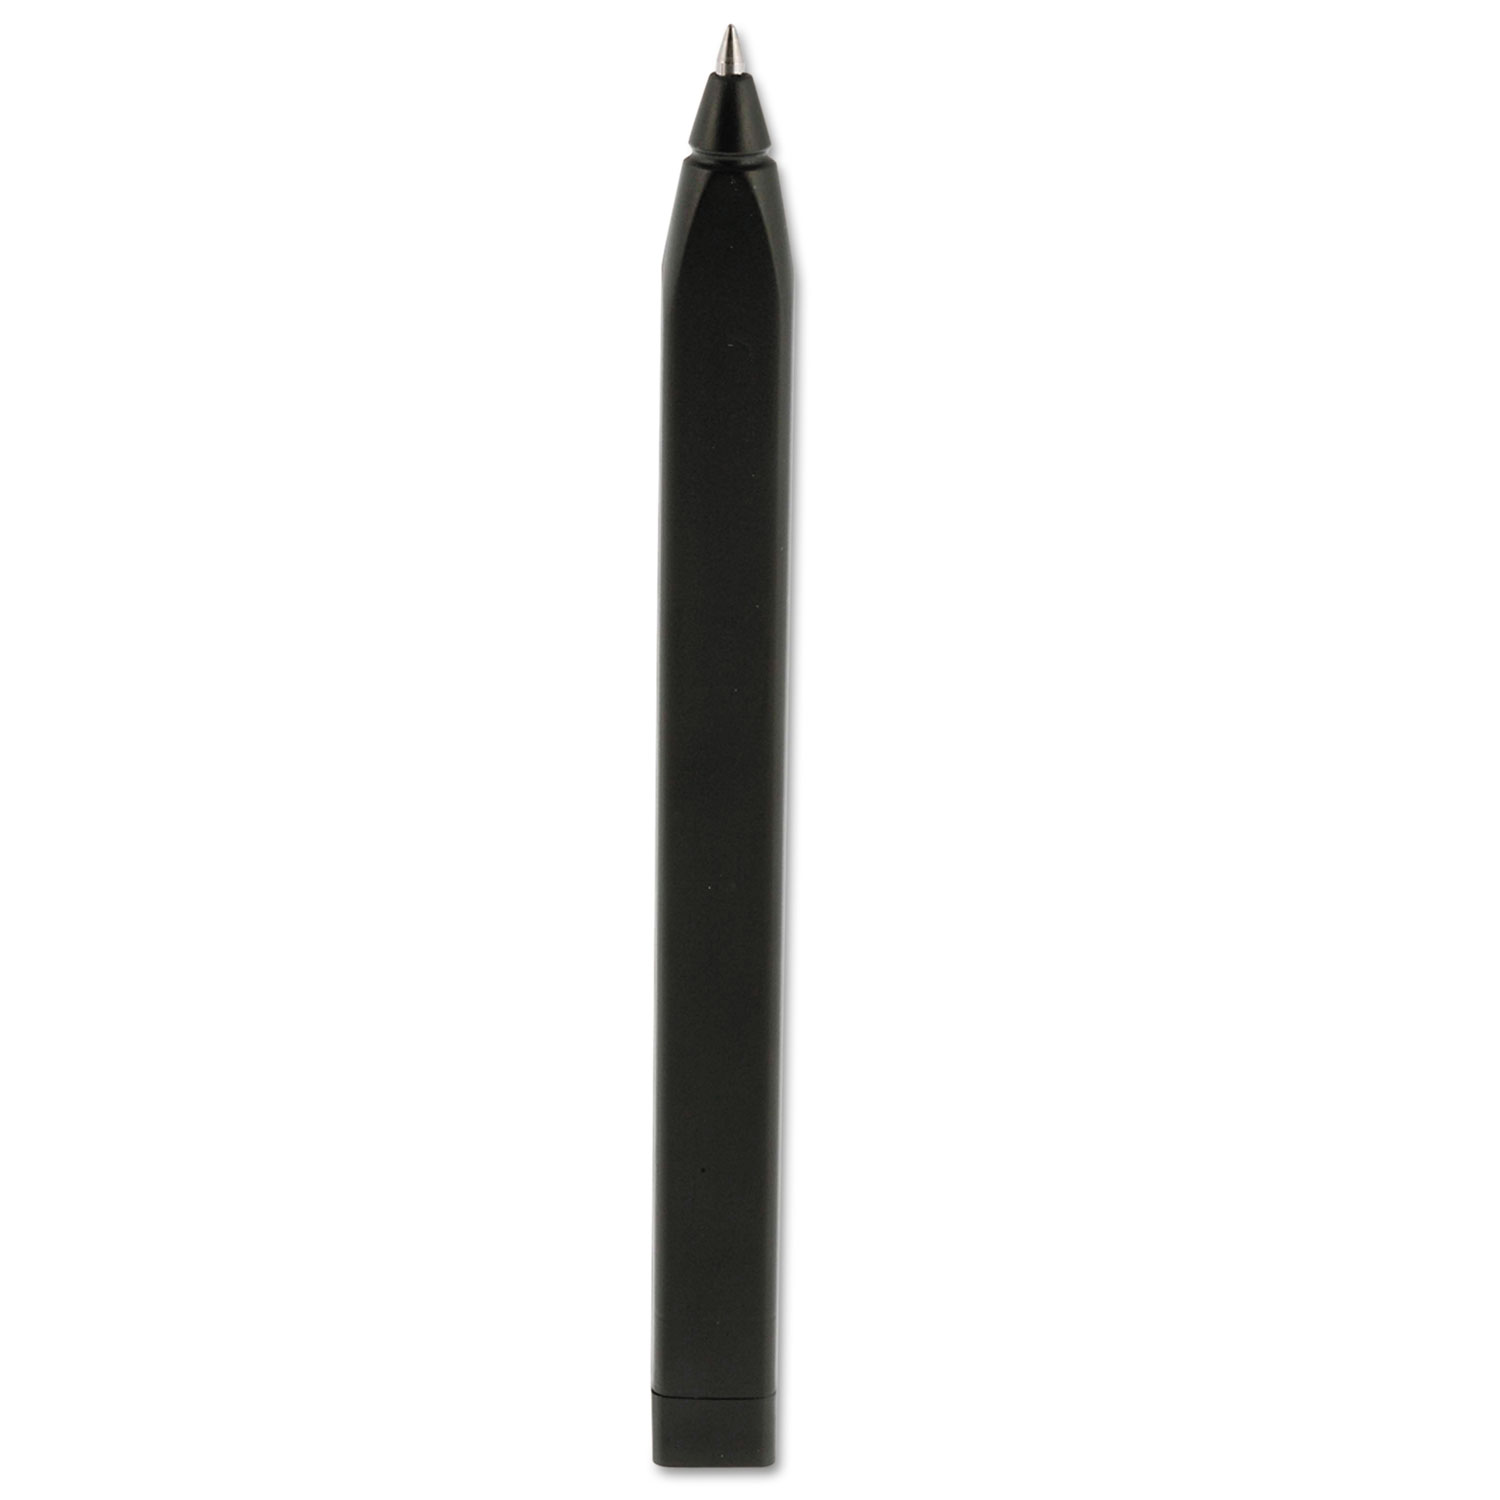 Roller Pen, 0.7mm, Medium Point, Black Ink